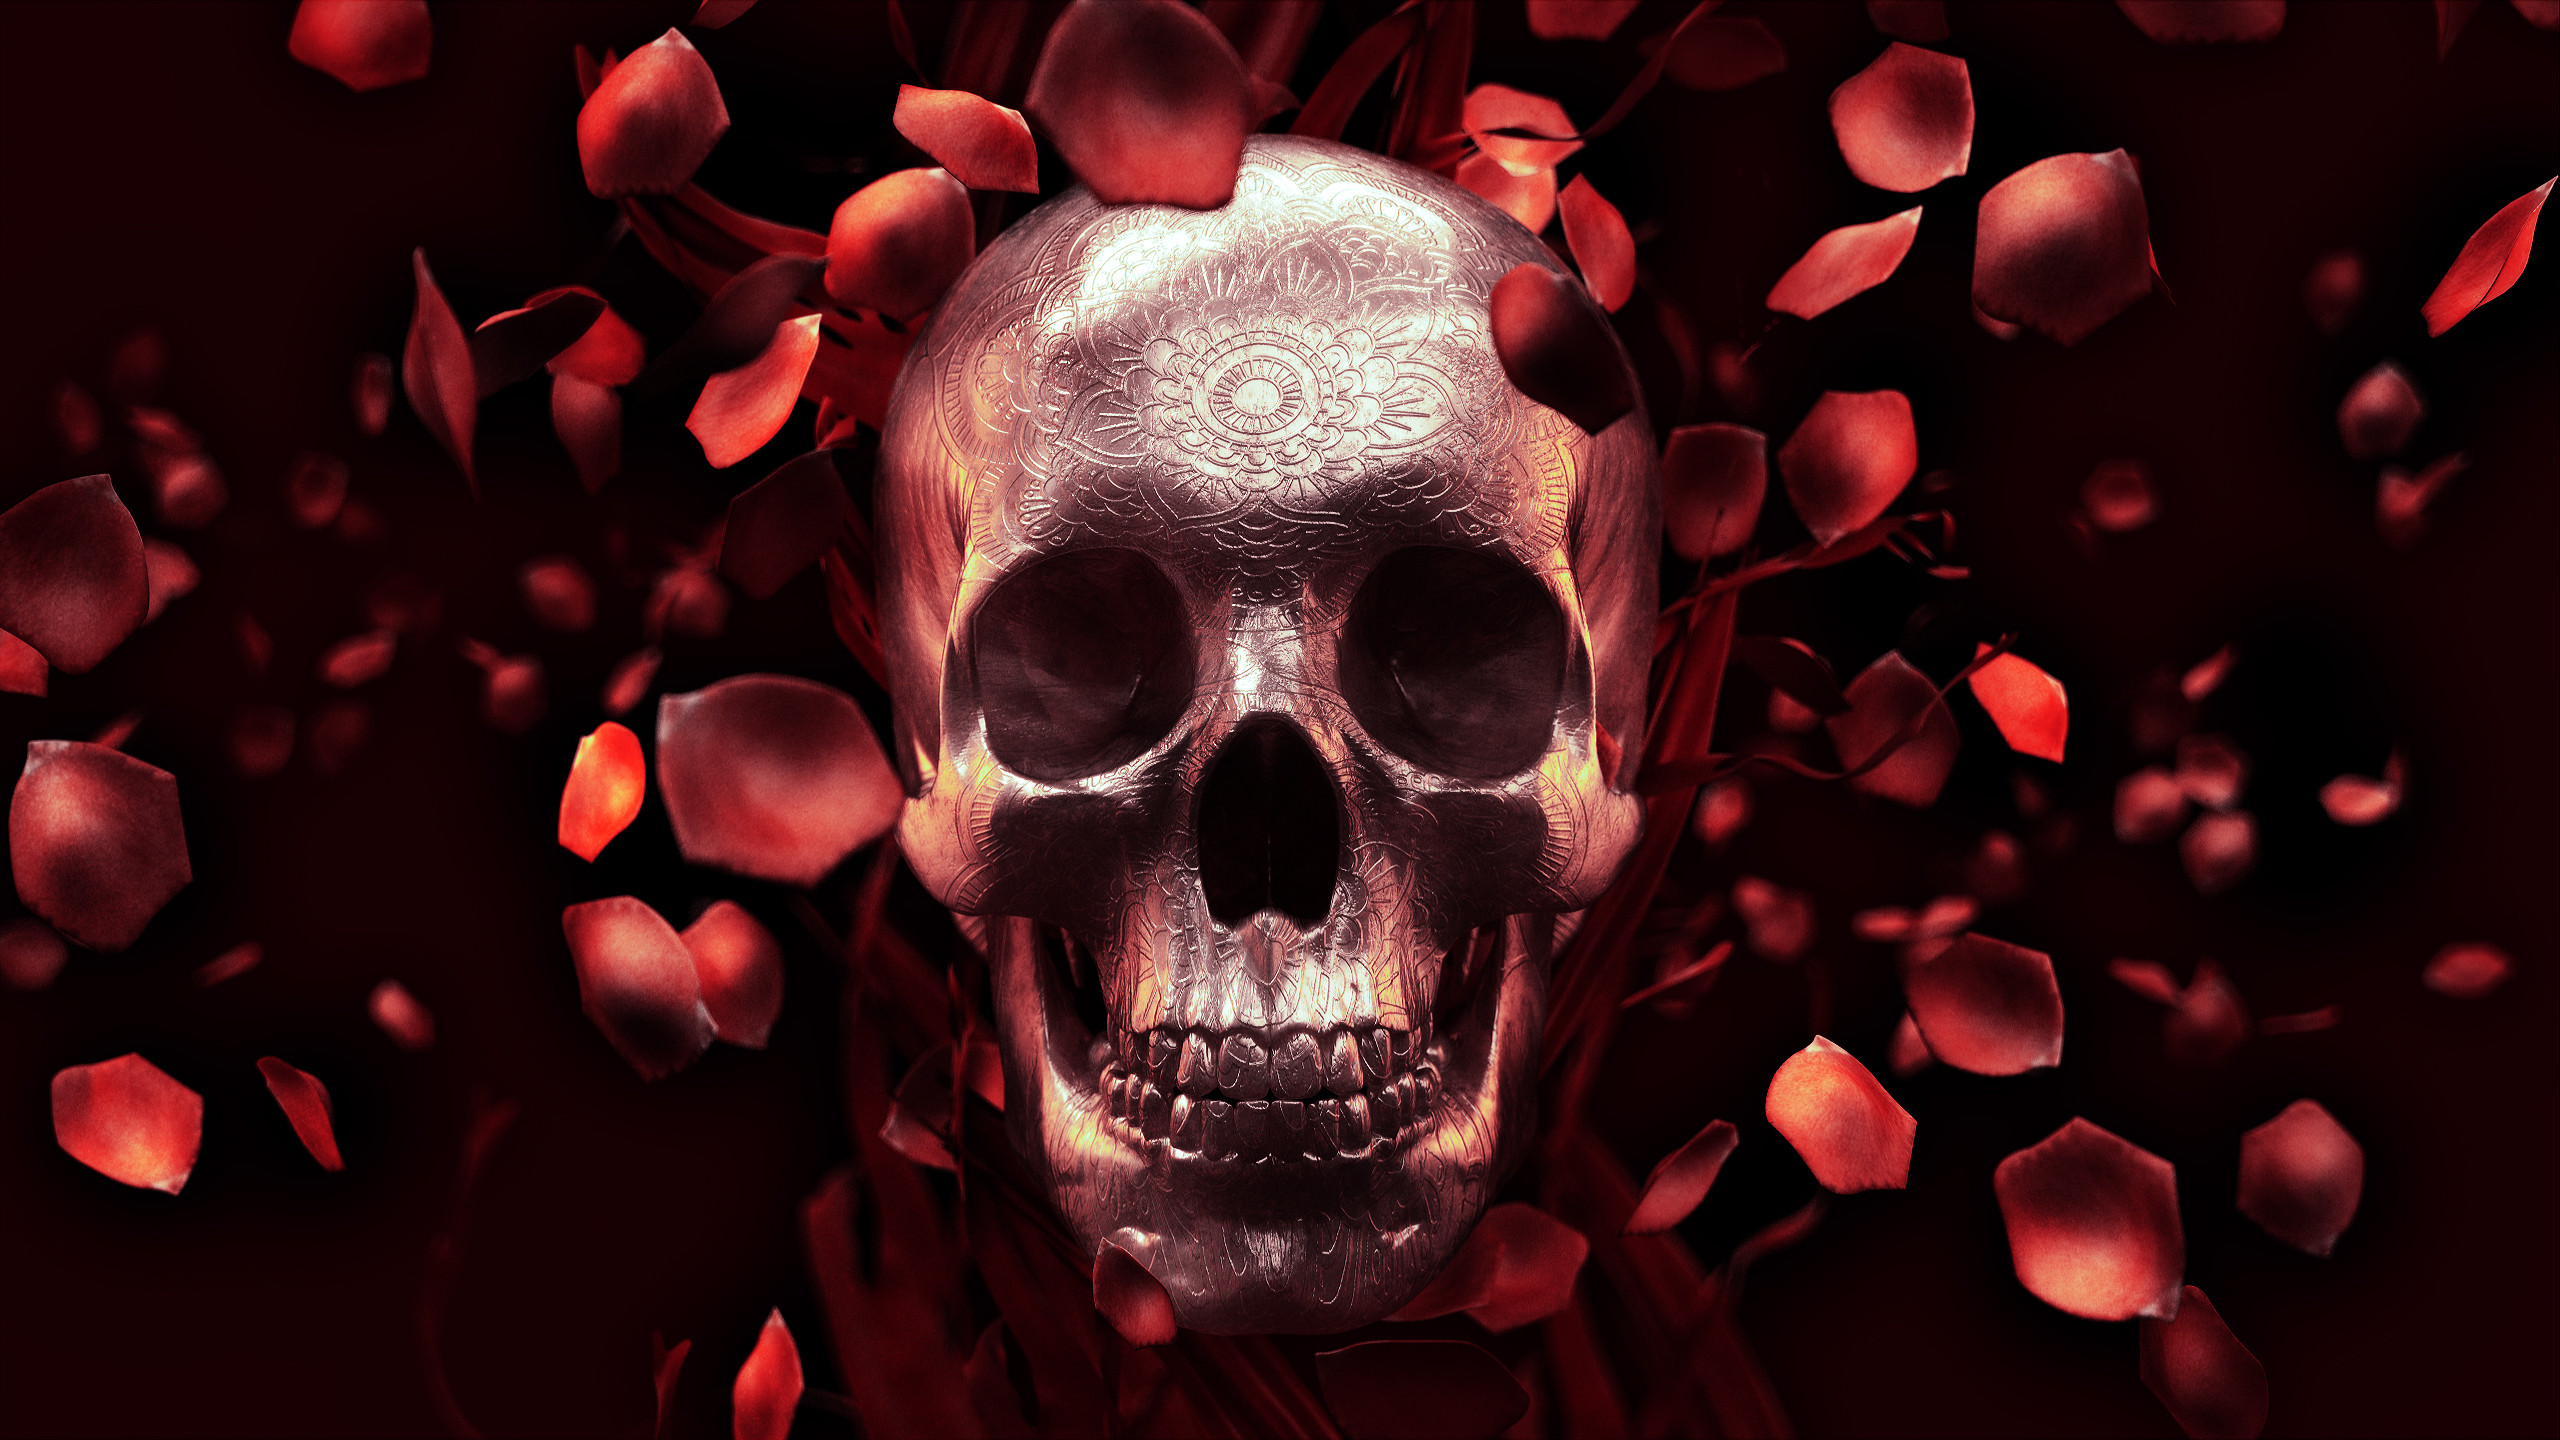 2560x1440 roses+skull+full+res.jpg (2560Ã1440) | à¼ºâ¡à¼» ARTWORK | Pinterest | Skull  wallpaper, Wallpaper and Digital art